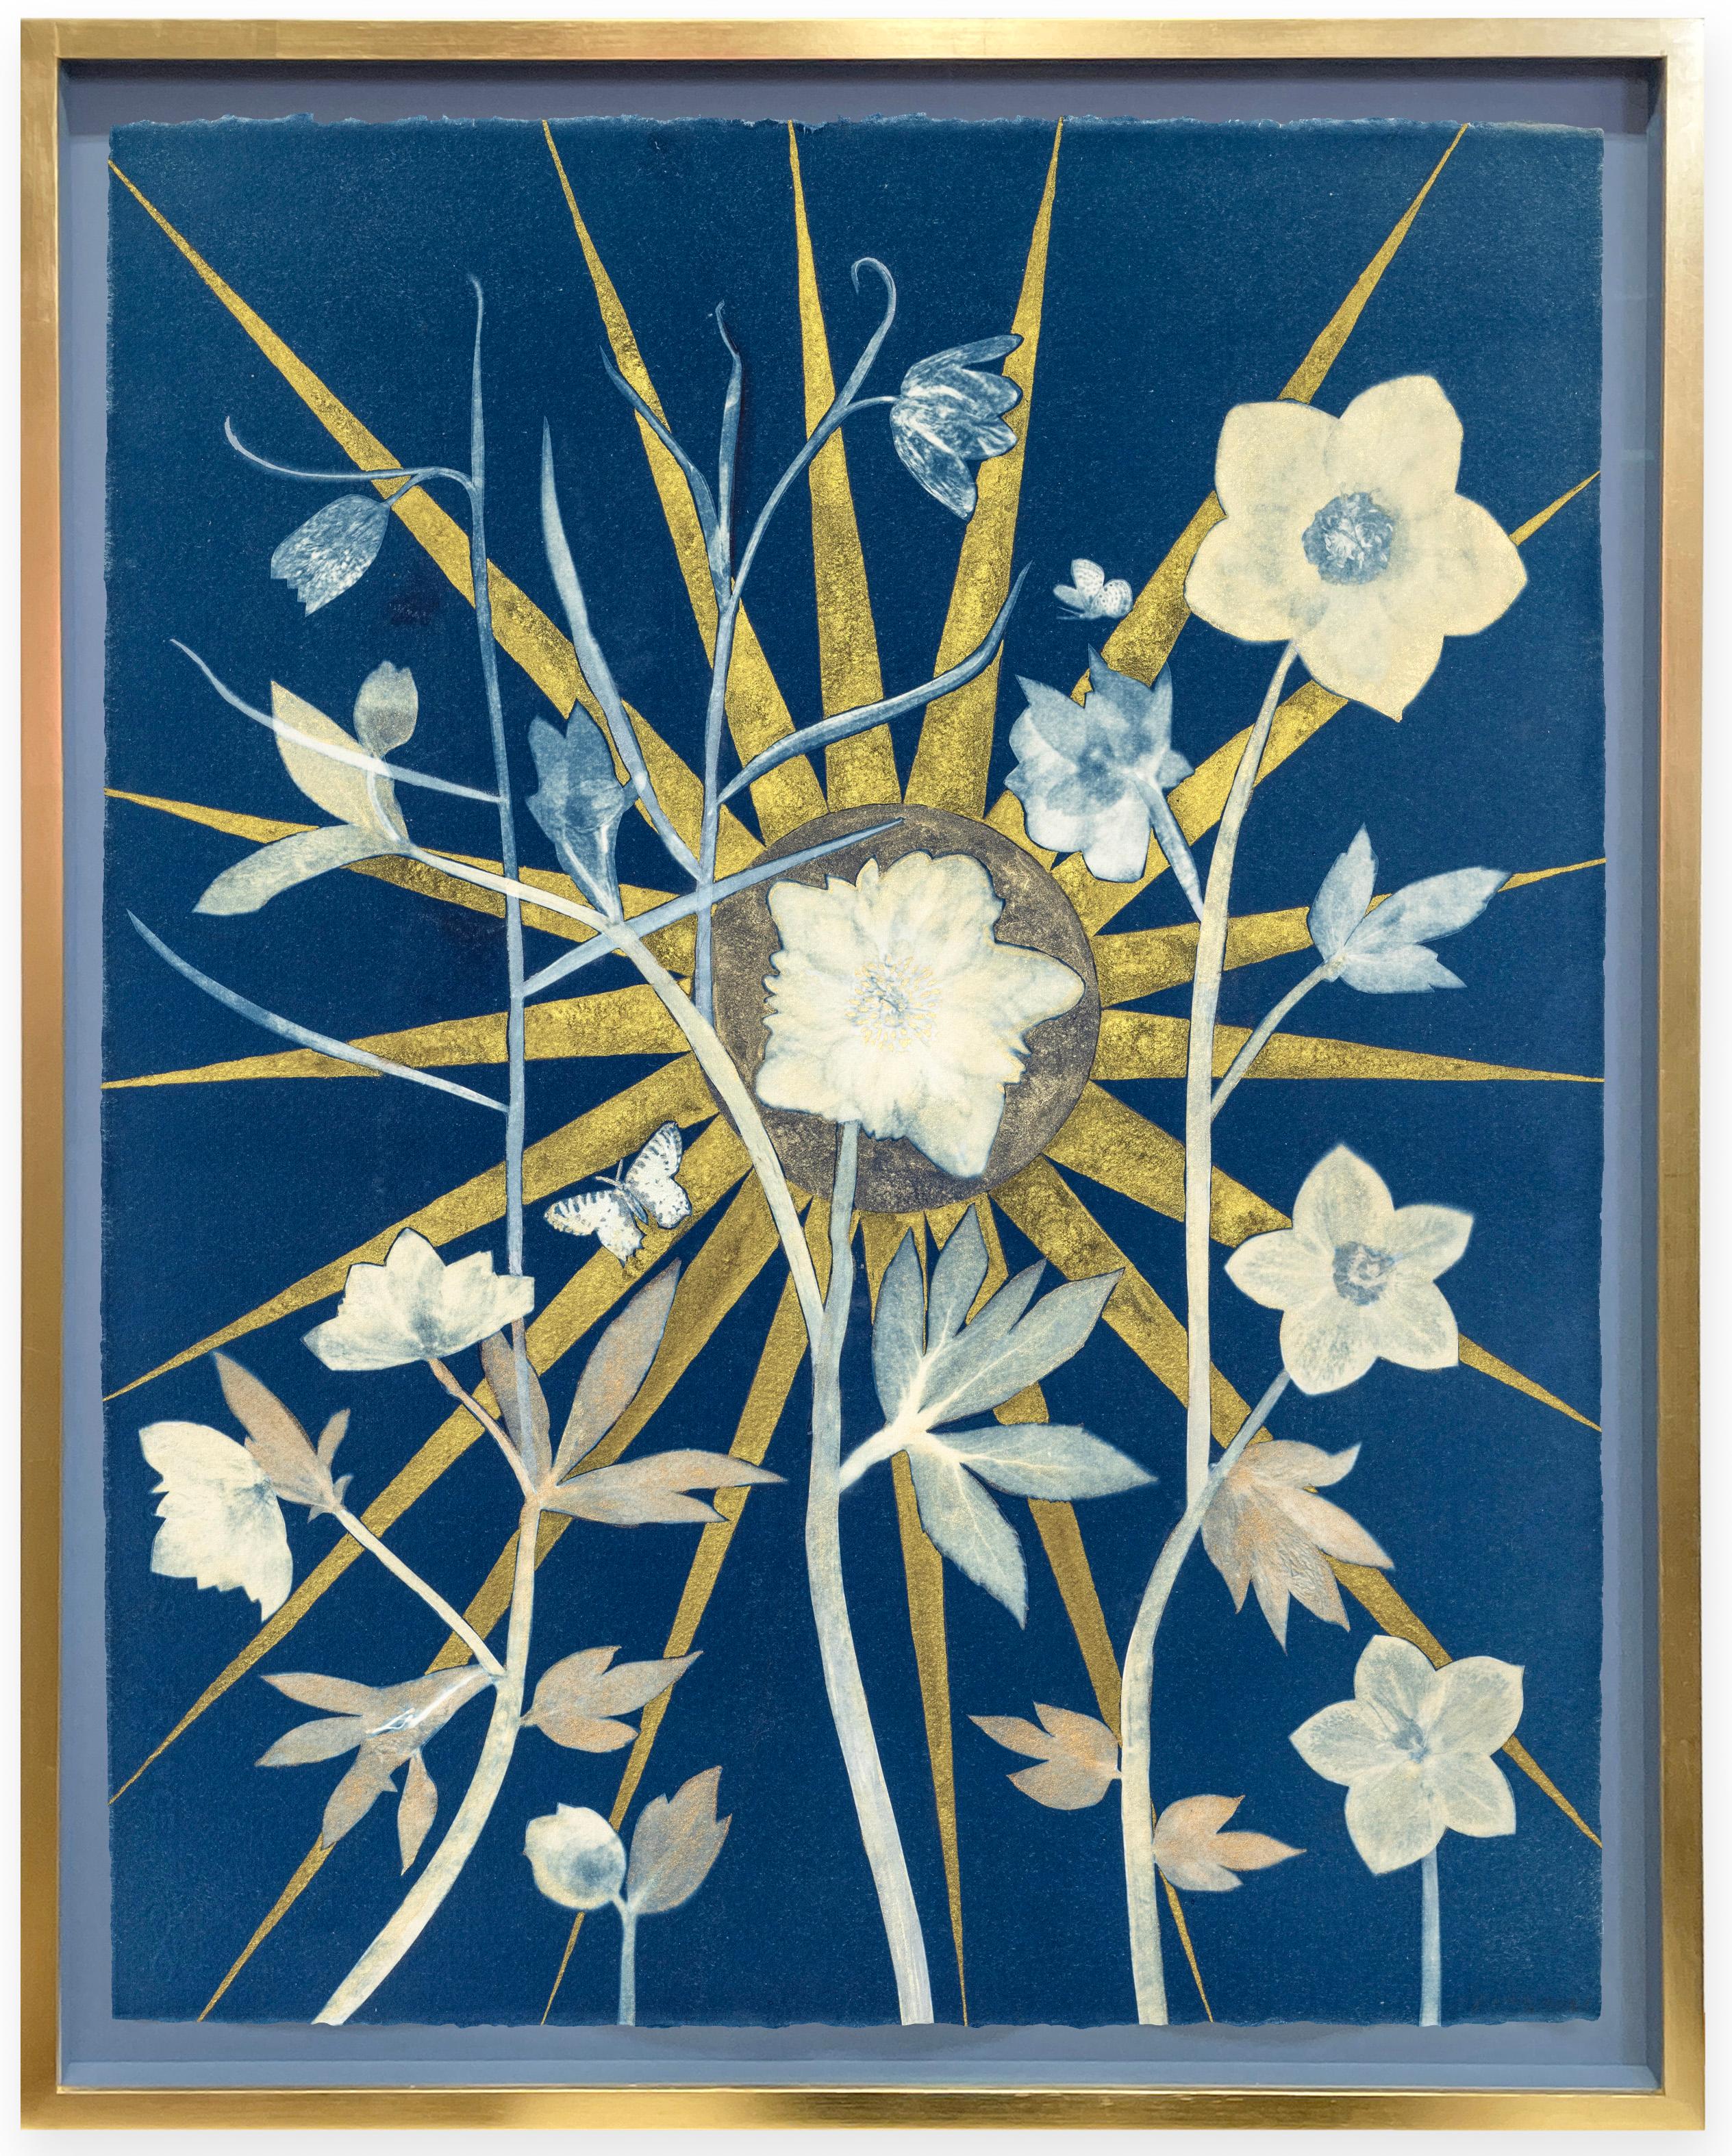 Julia Whitney Barnes Figurative Painting - Hellebore, Center Star (Still Life of Golden Sunburst, White Flowers on Indigo)